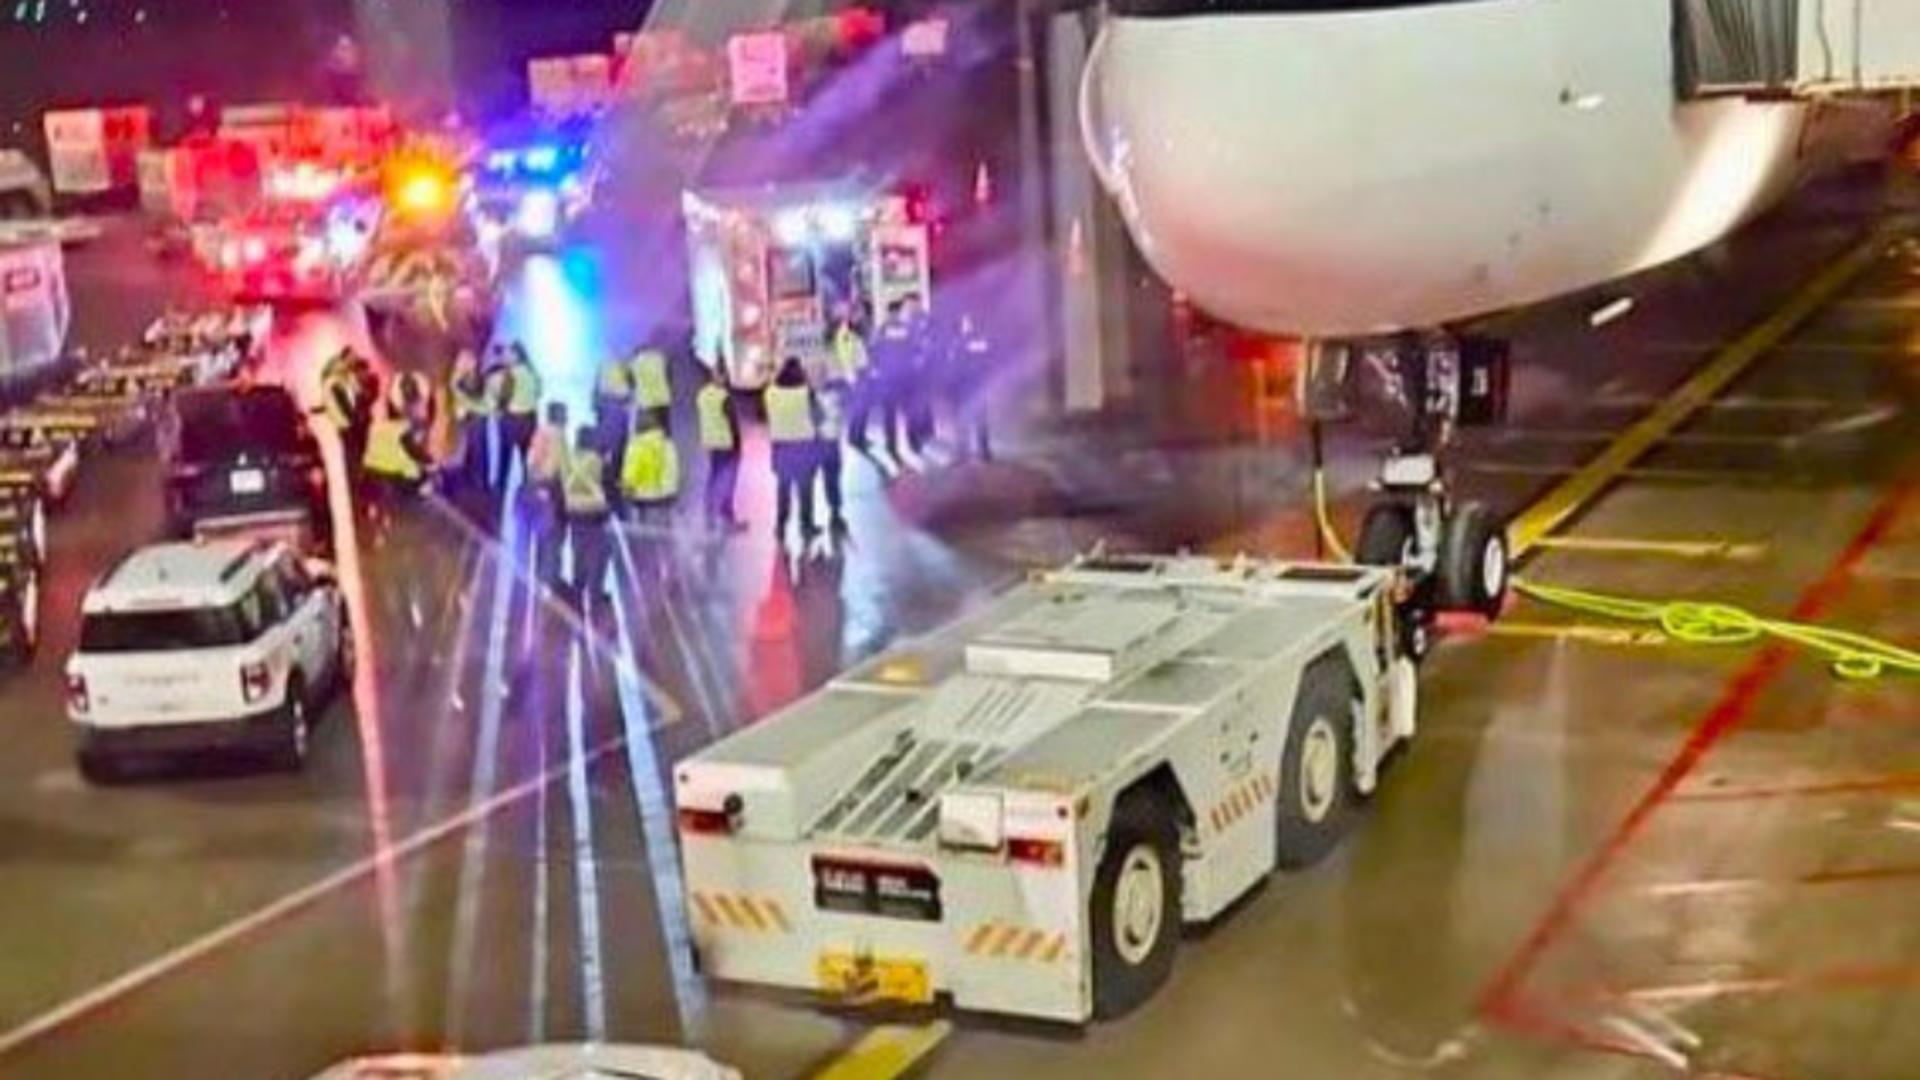 Incident bizar la bordul unui Boeing 777. Un pasager abia îmbarcat a căzut din avion: ce s-a întâmplat la bordul aeronavei